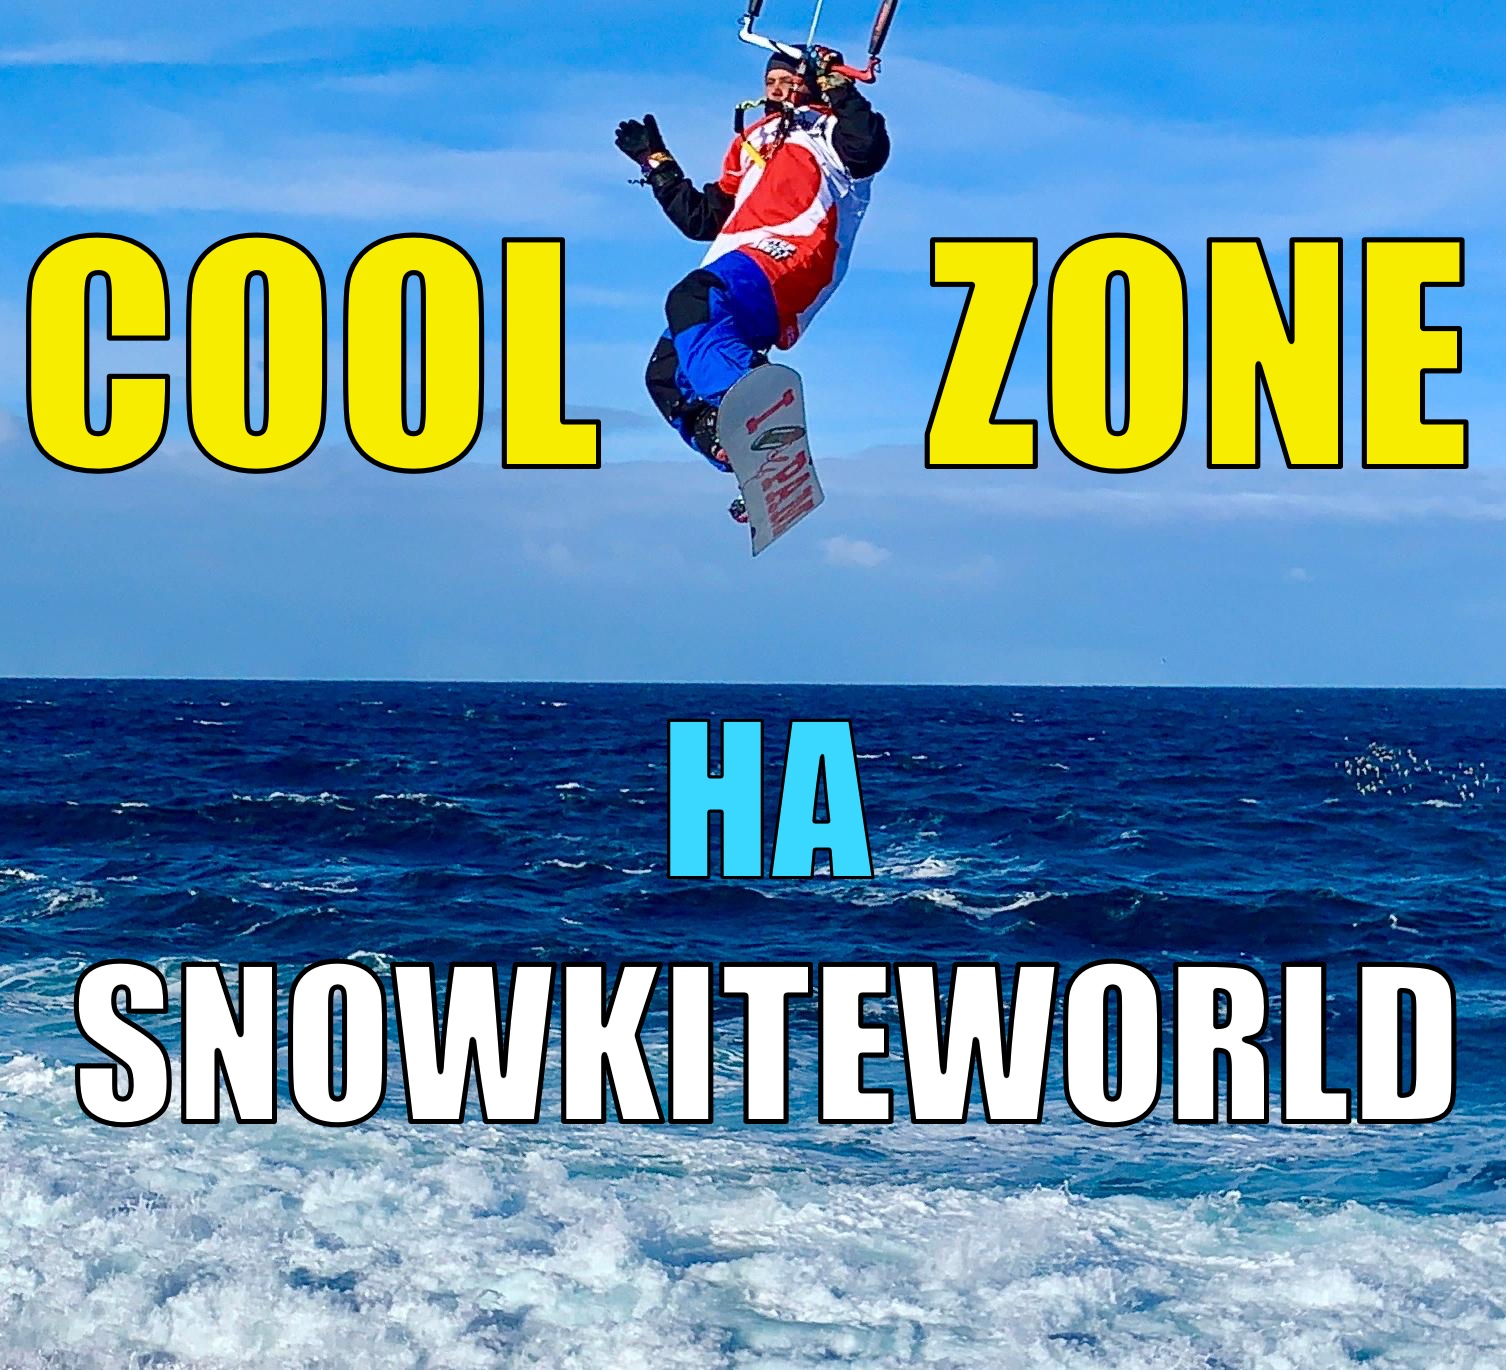 Обзор комбинезона Cool Zone 2019 после сезона на SnowKiteWorld.